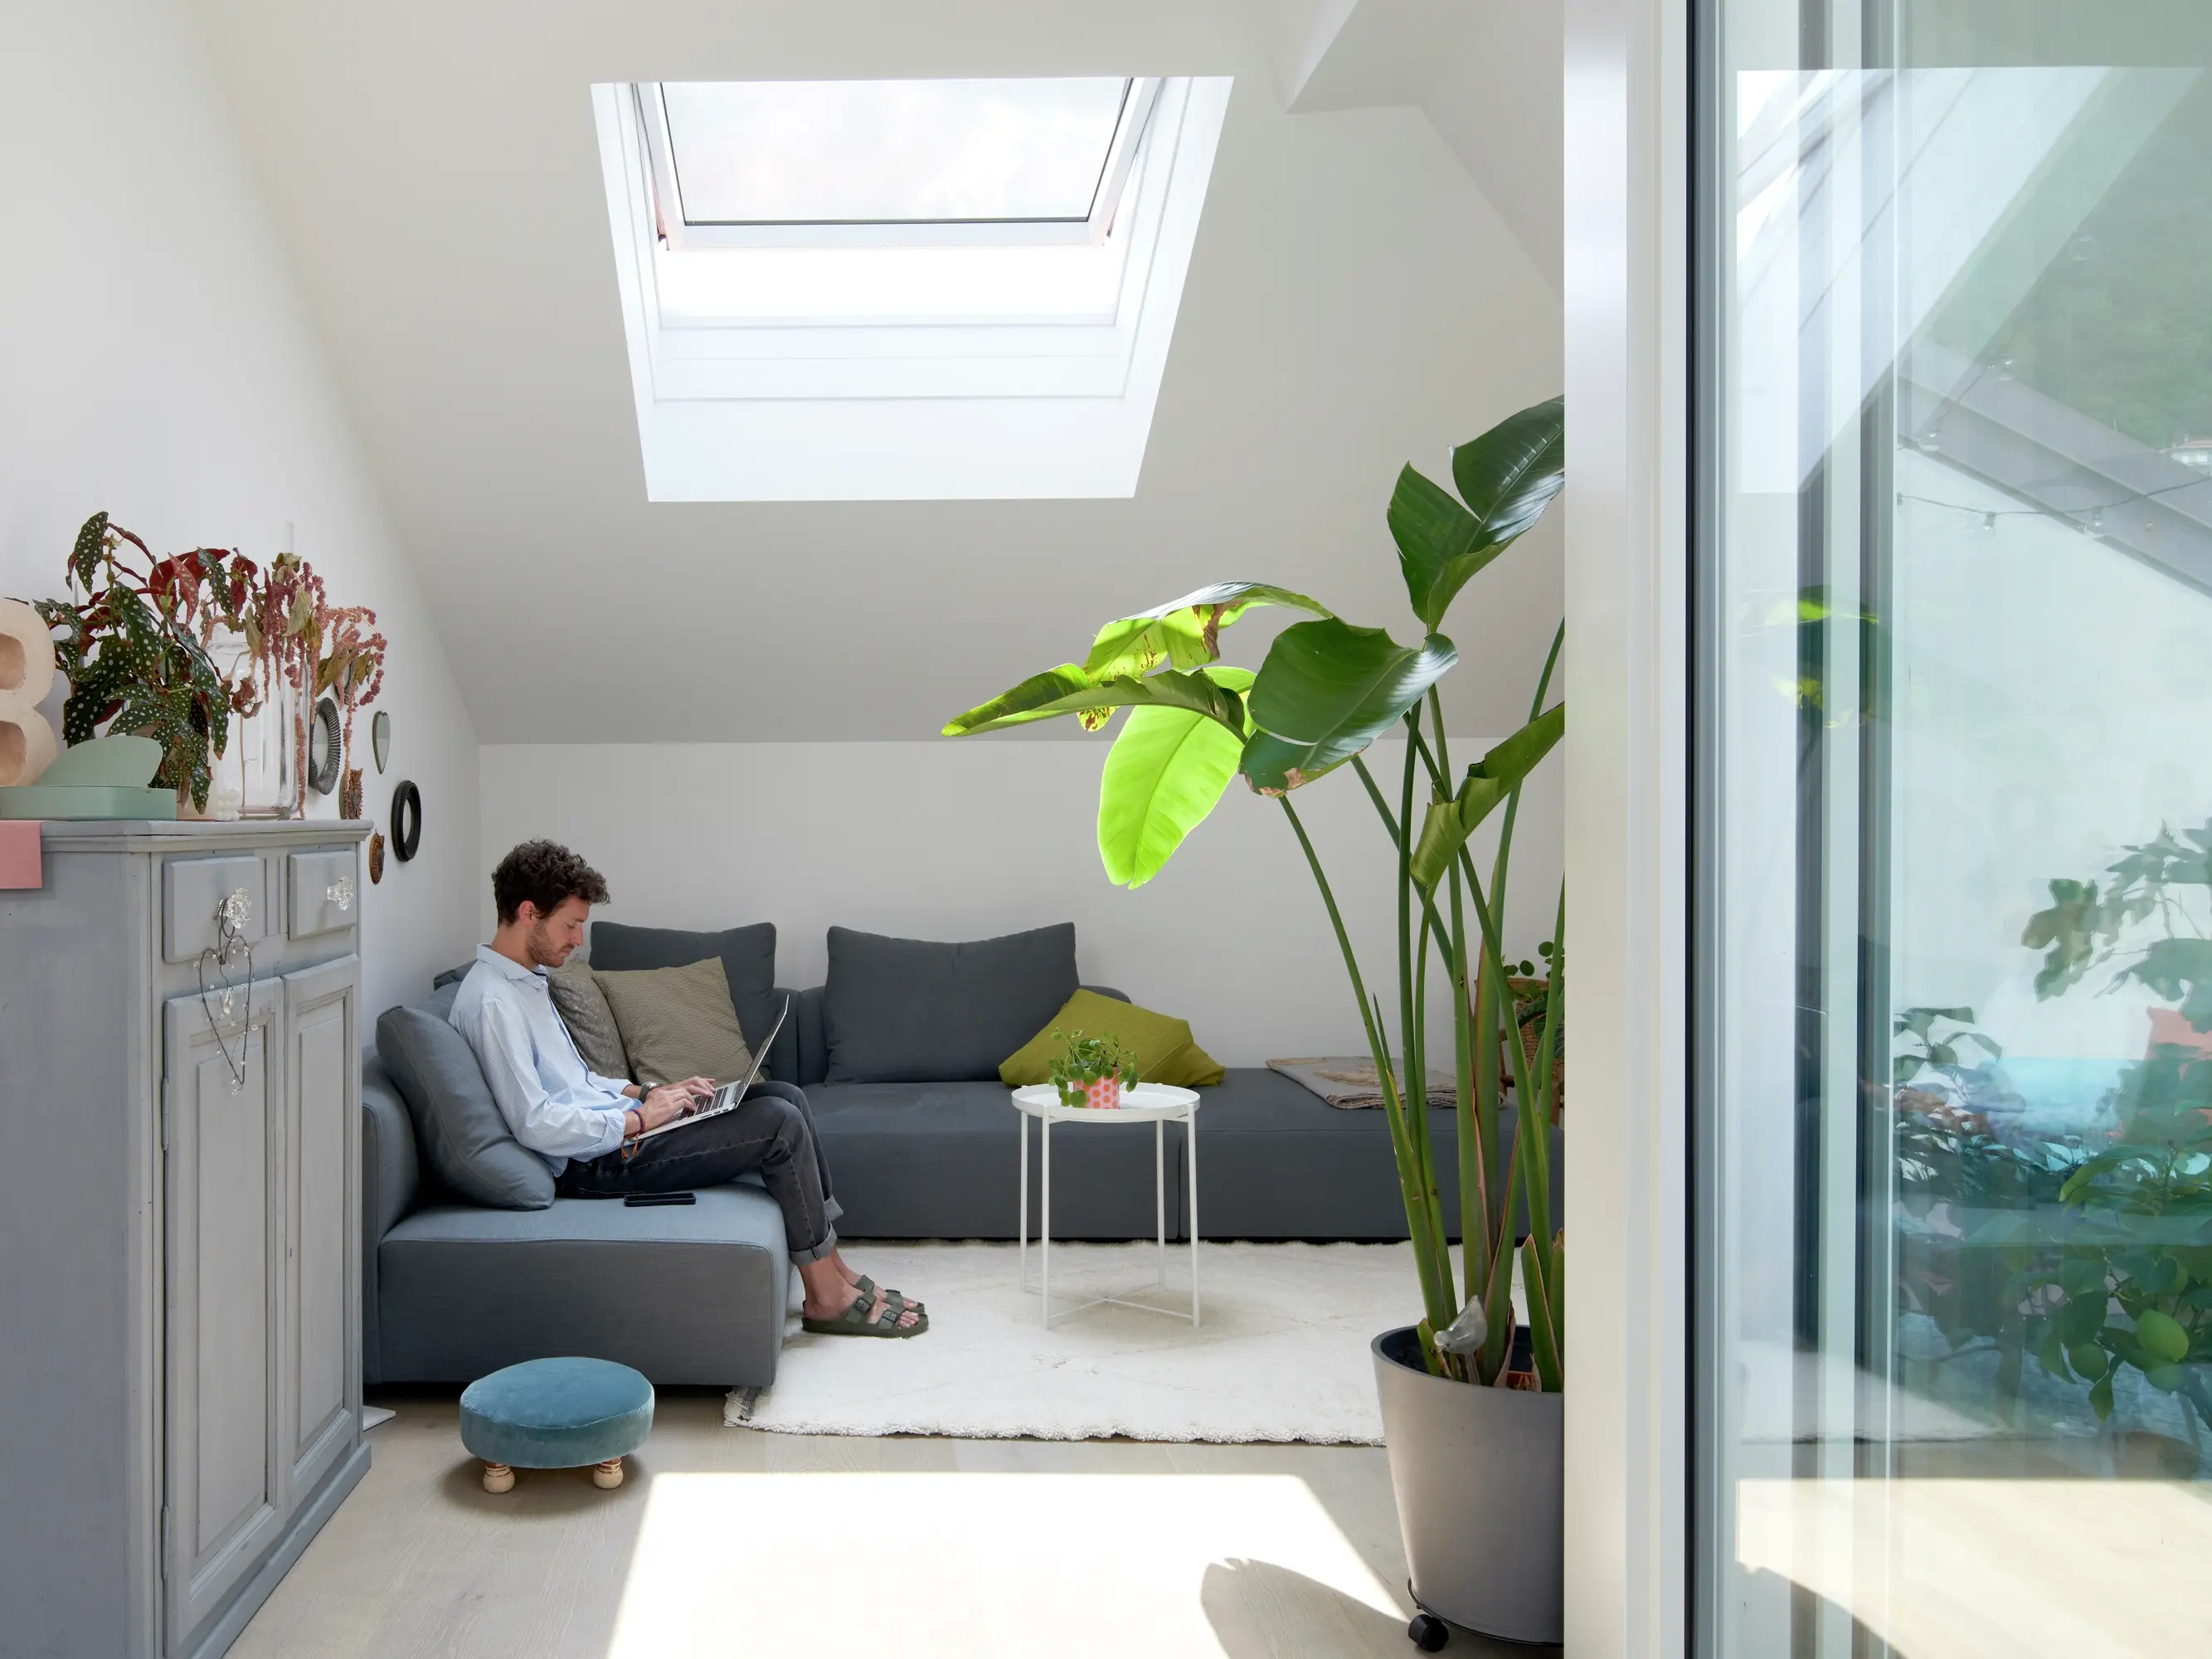 Salon de comble confortable avec fenêtre de toit VELUX, canapé gris, plantes vertes et lumière naturelle.